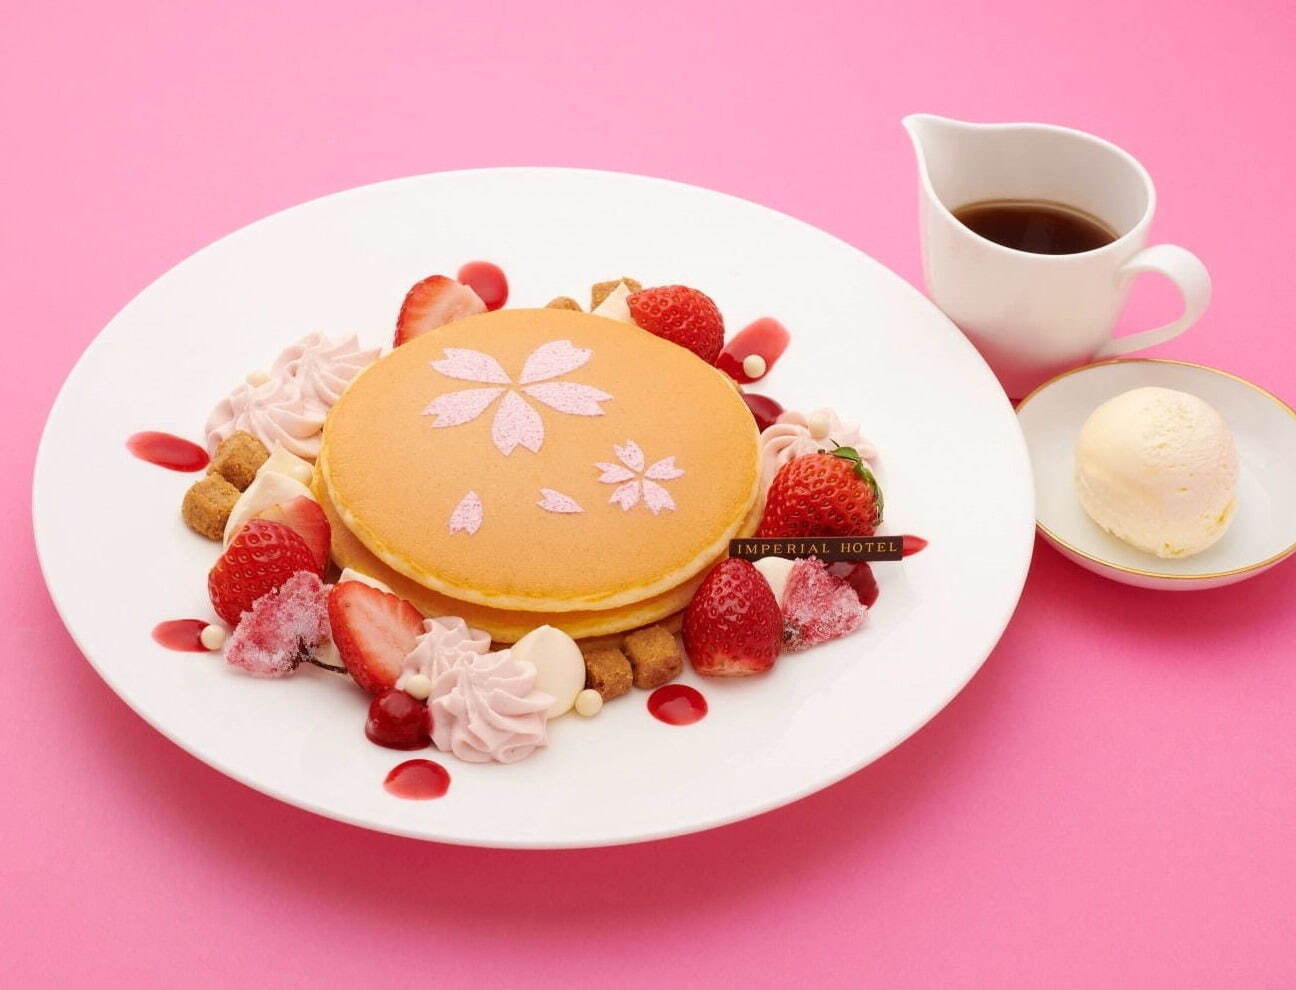 マスカルポーネクリームと桜香るベリーソースのパンケーキ 1,900円